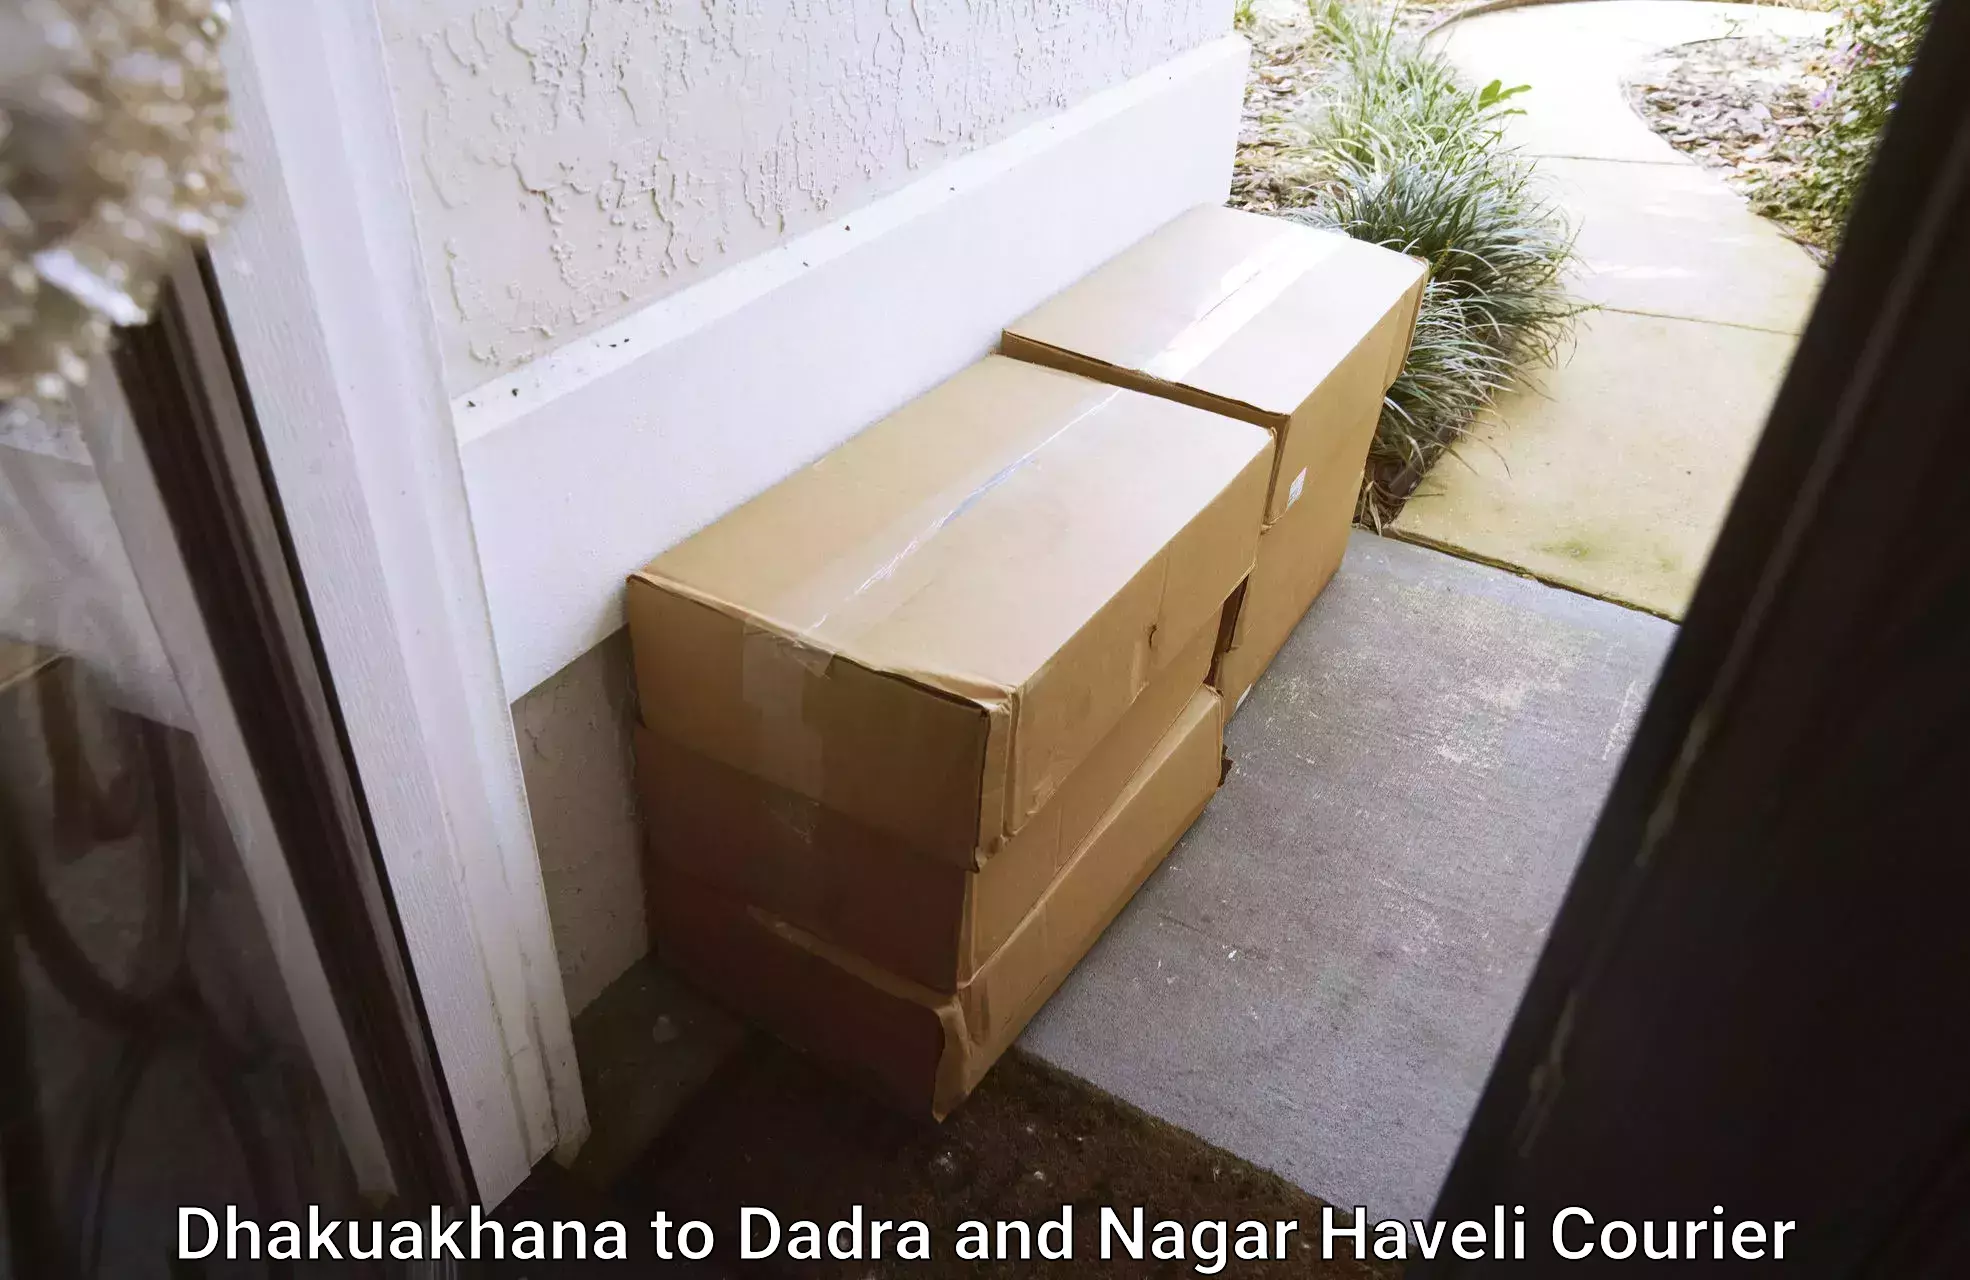 Advanced parcel tracking Dhakuakhana to Dadra and Nagar Haveli